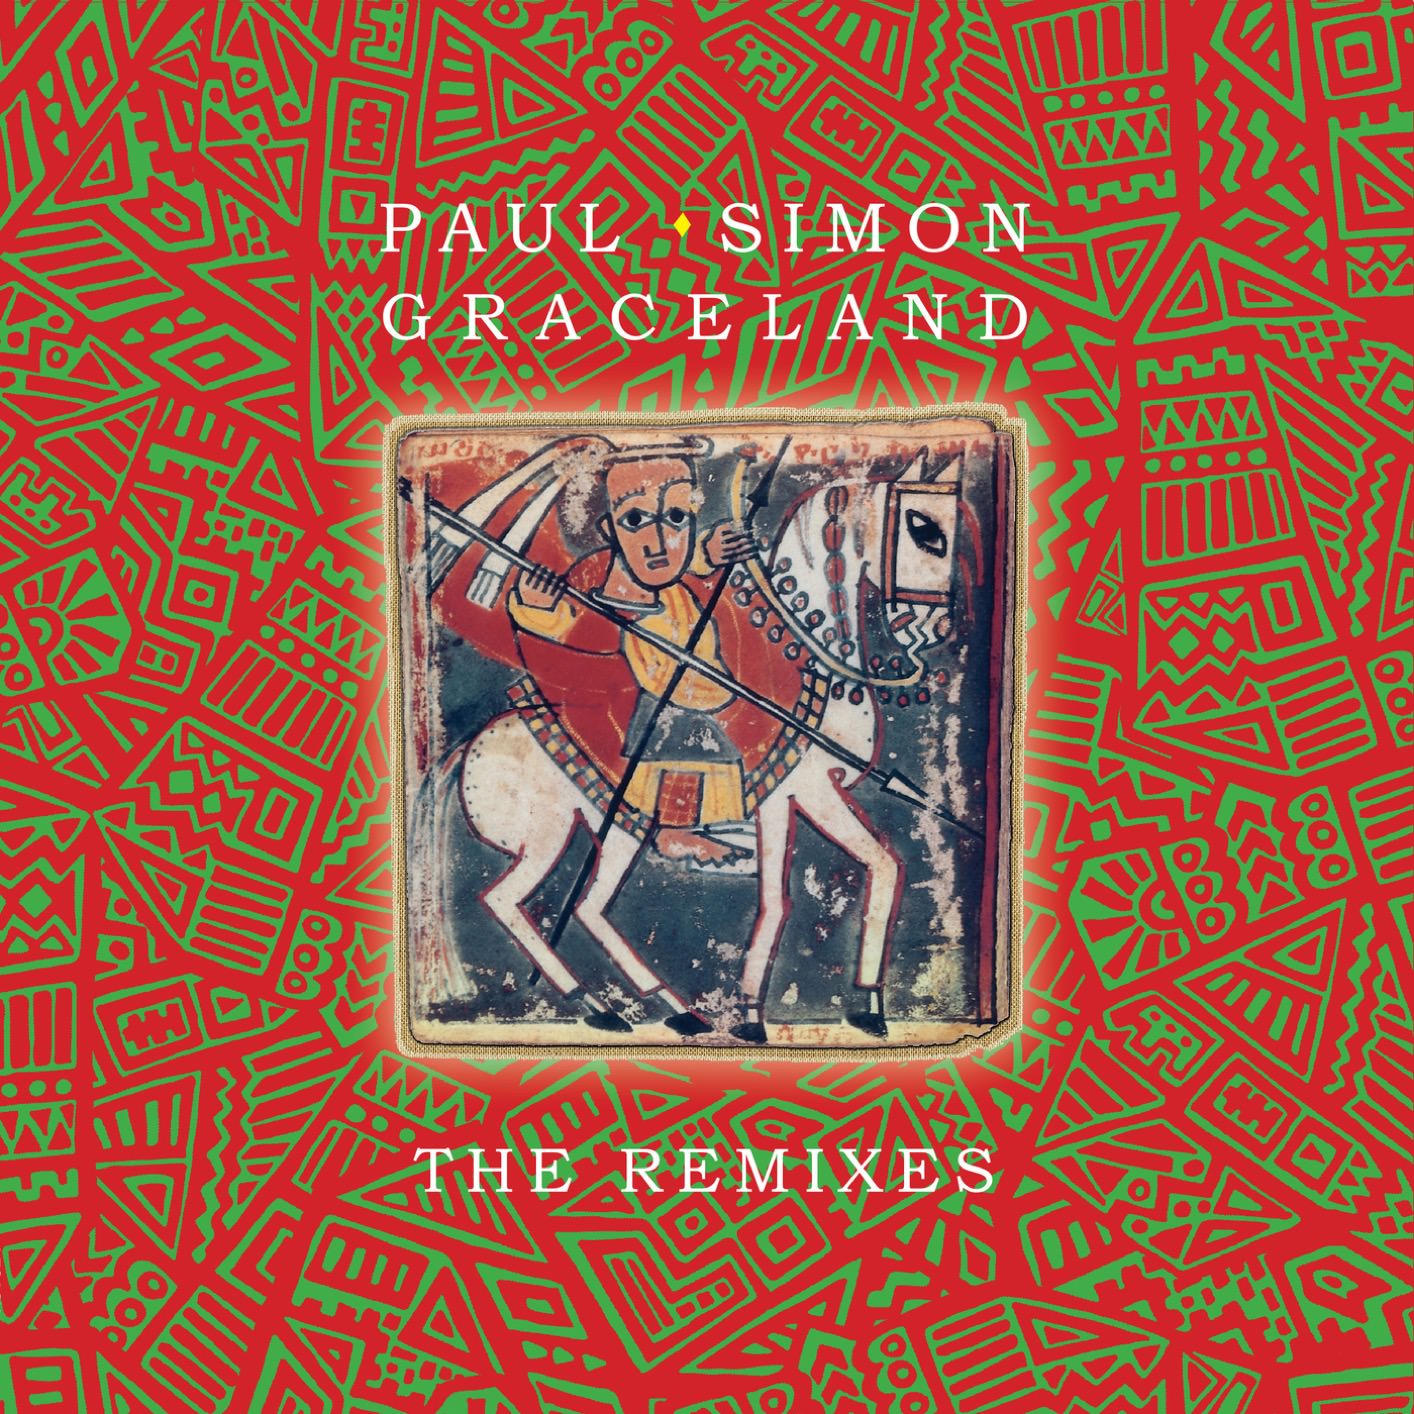 Paul Simon - Graceland - The Remixes (2018) [FLAC 24bit/44,1kHz]